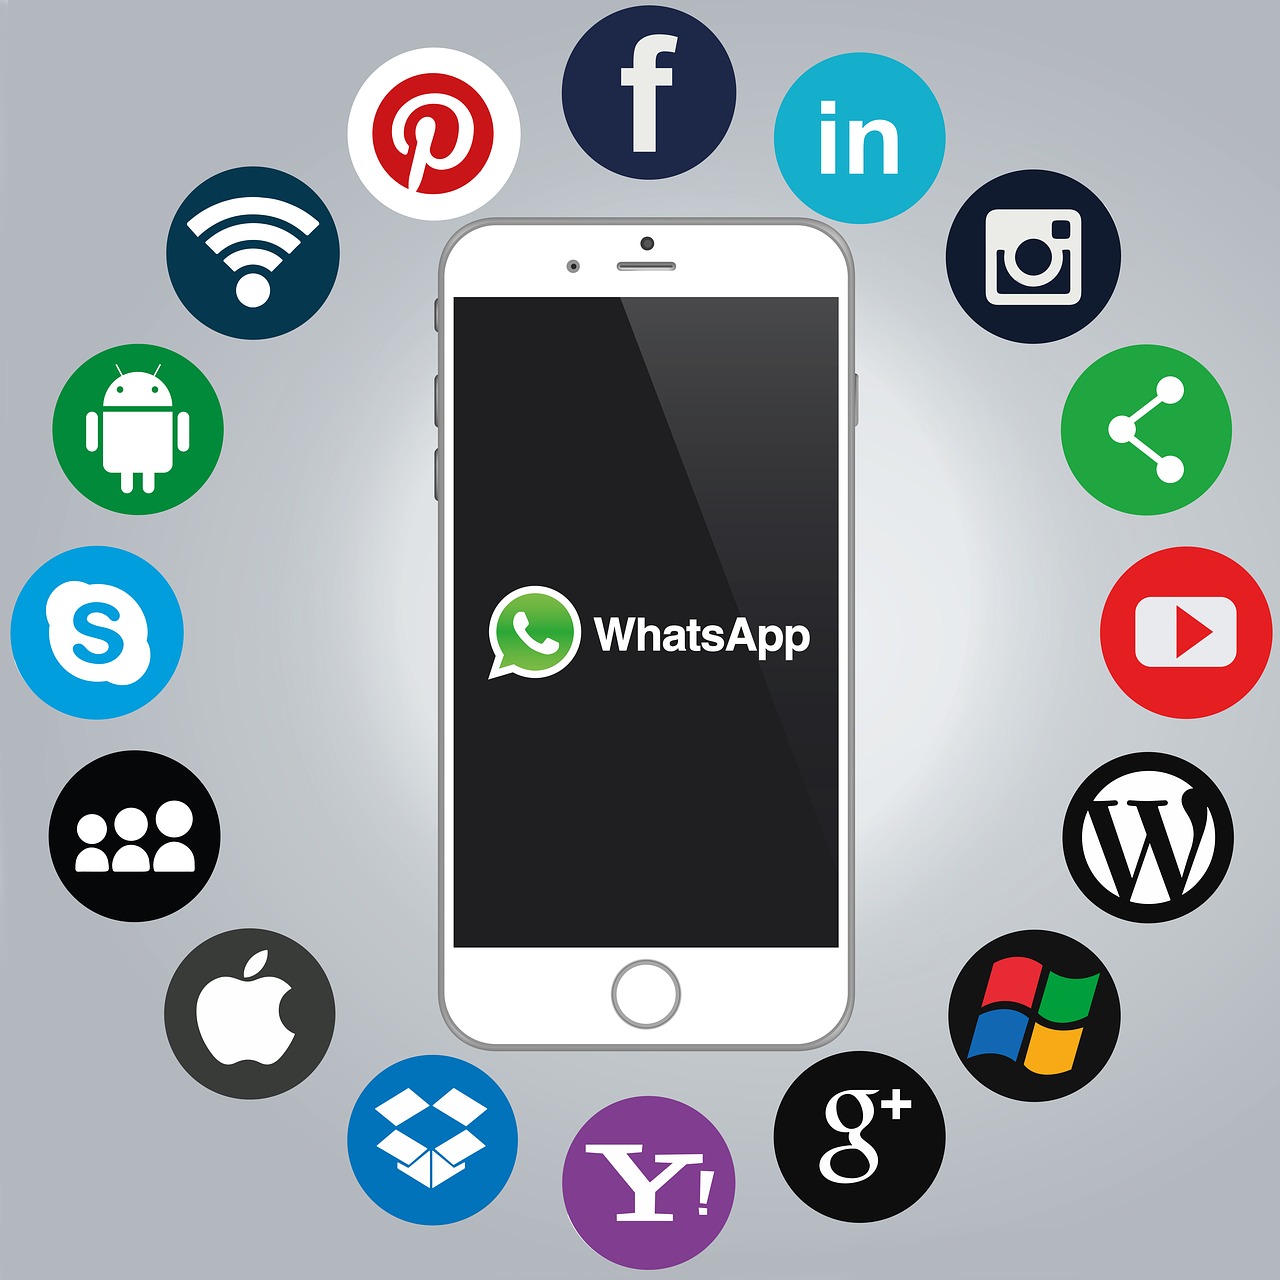 Whatsapp, Išmanusis Telefonas, Socialinė Žiniasklaida, Piktogramos, Komunikacija, Tinklų Kūrimas, App, Mobilusis Telefonas, Pokalbis, Tinklas